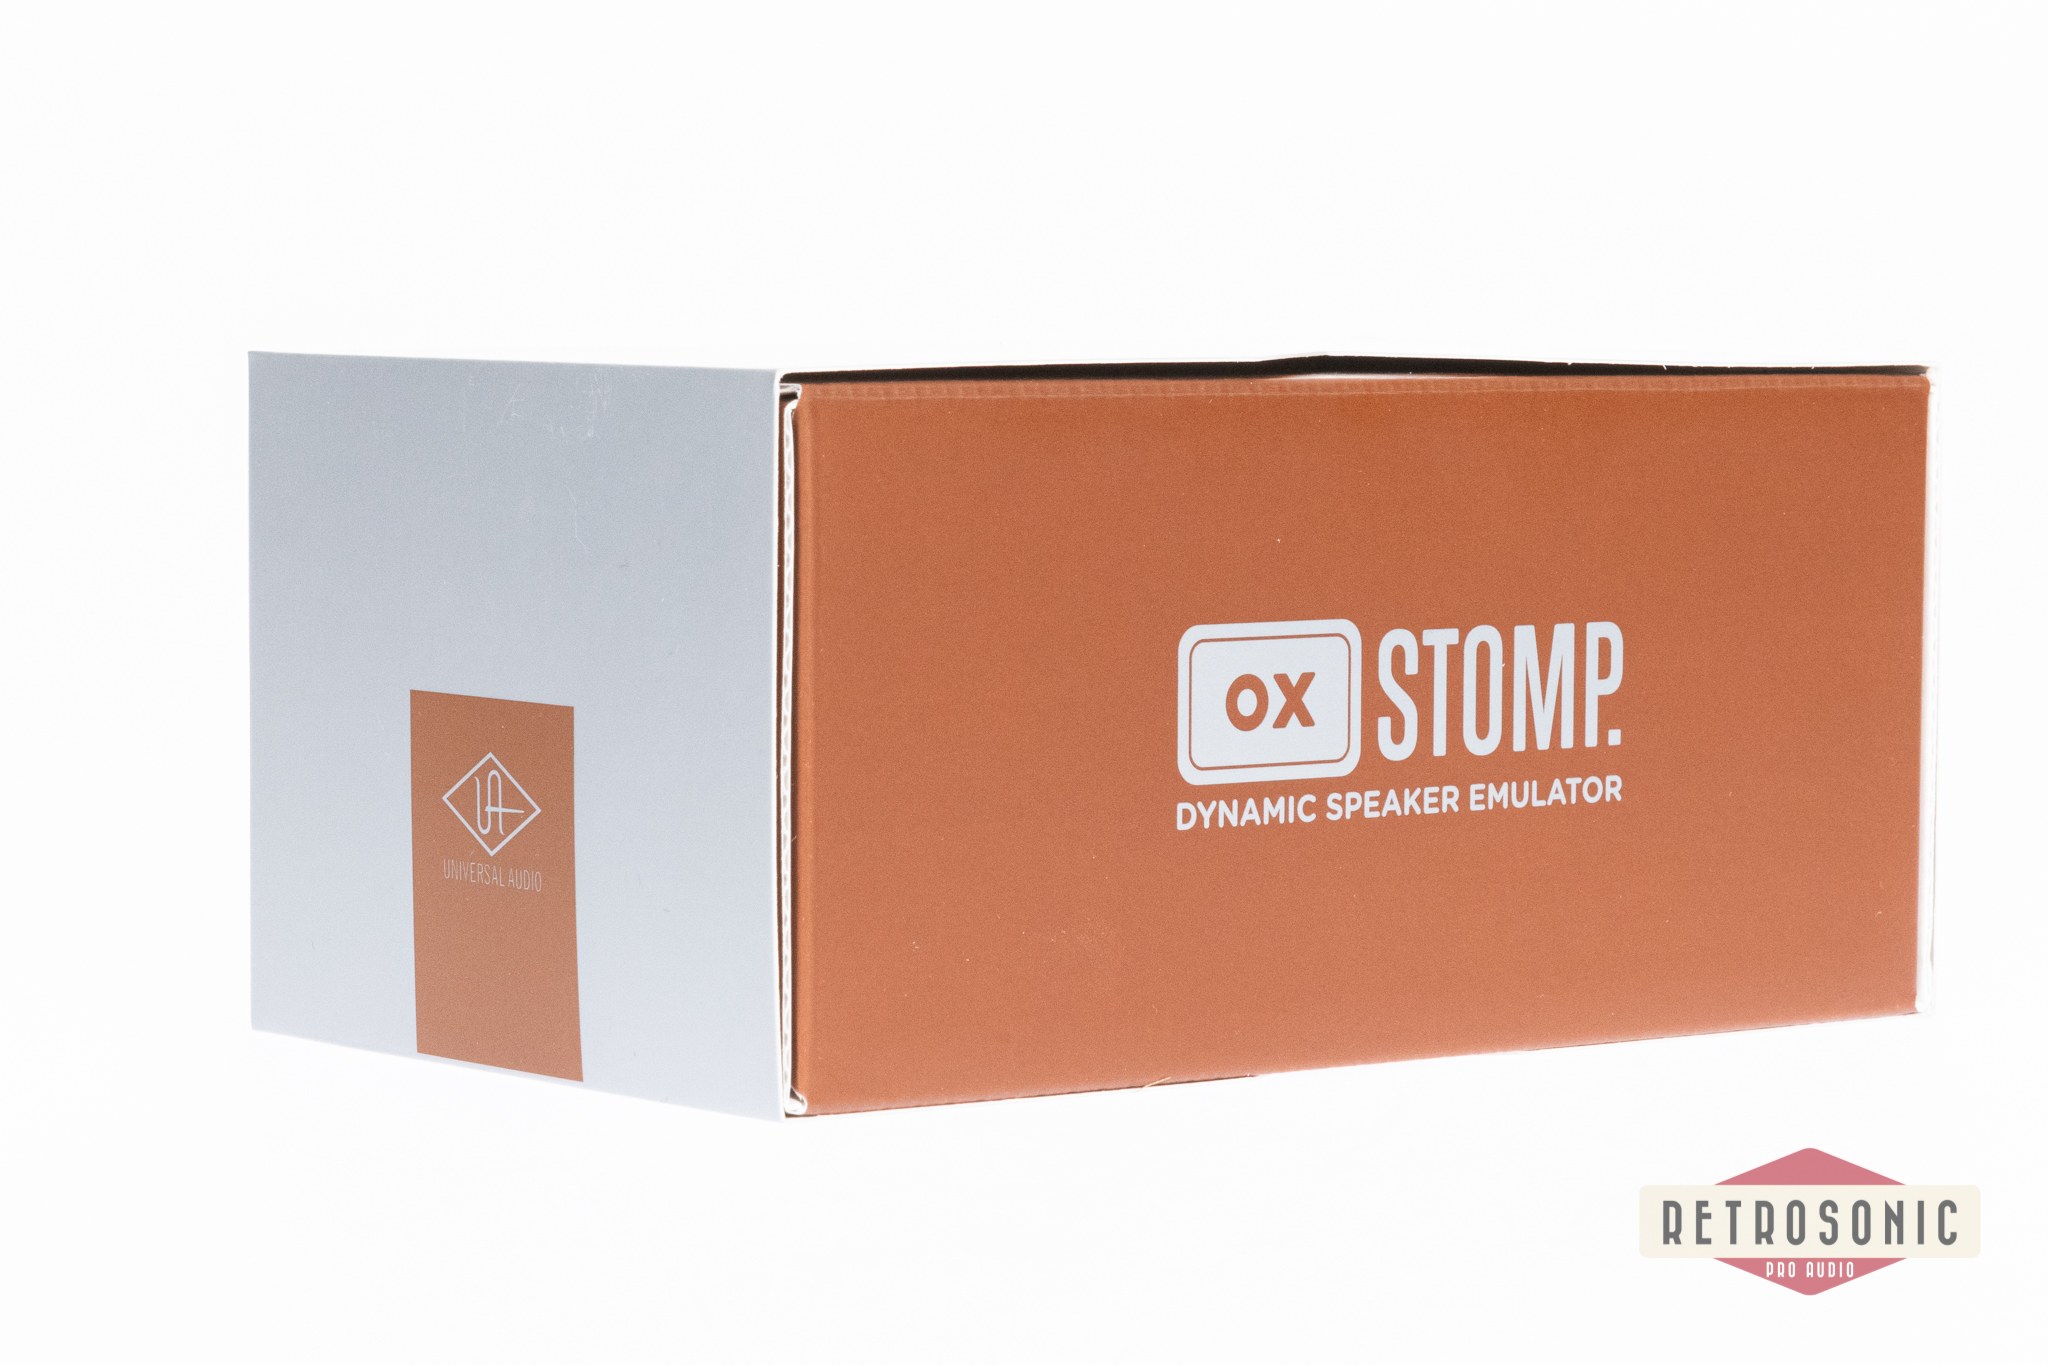 Universal Audio UAFX OX Stomp Dynamic Speaker Emulator Stereo Pedal